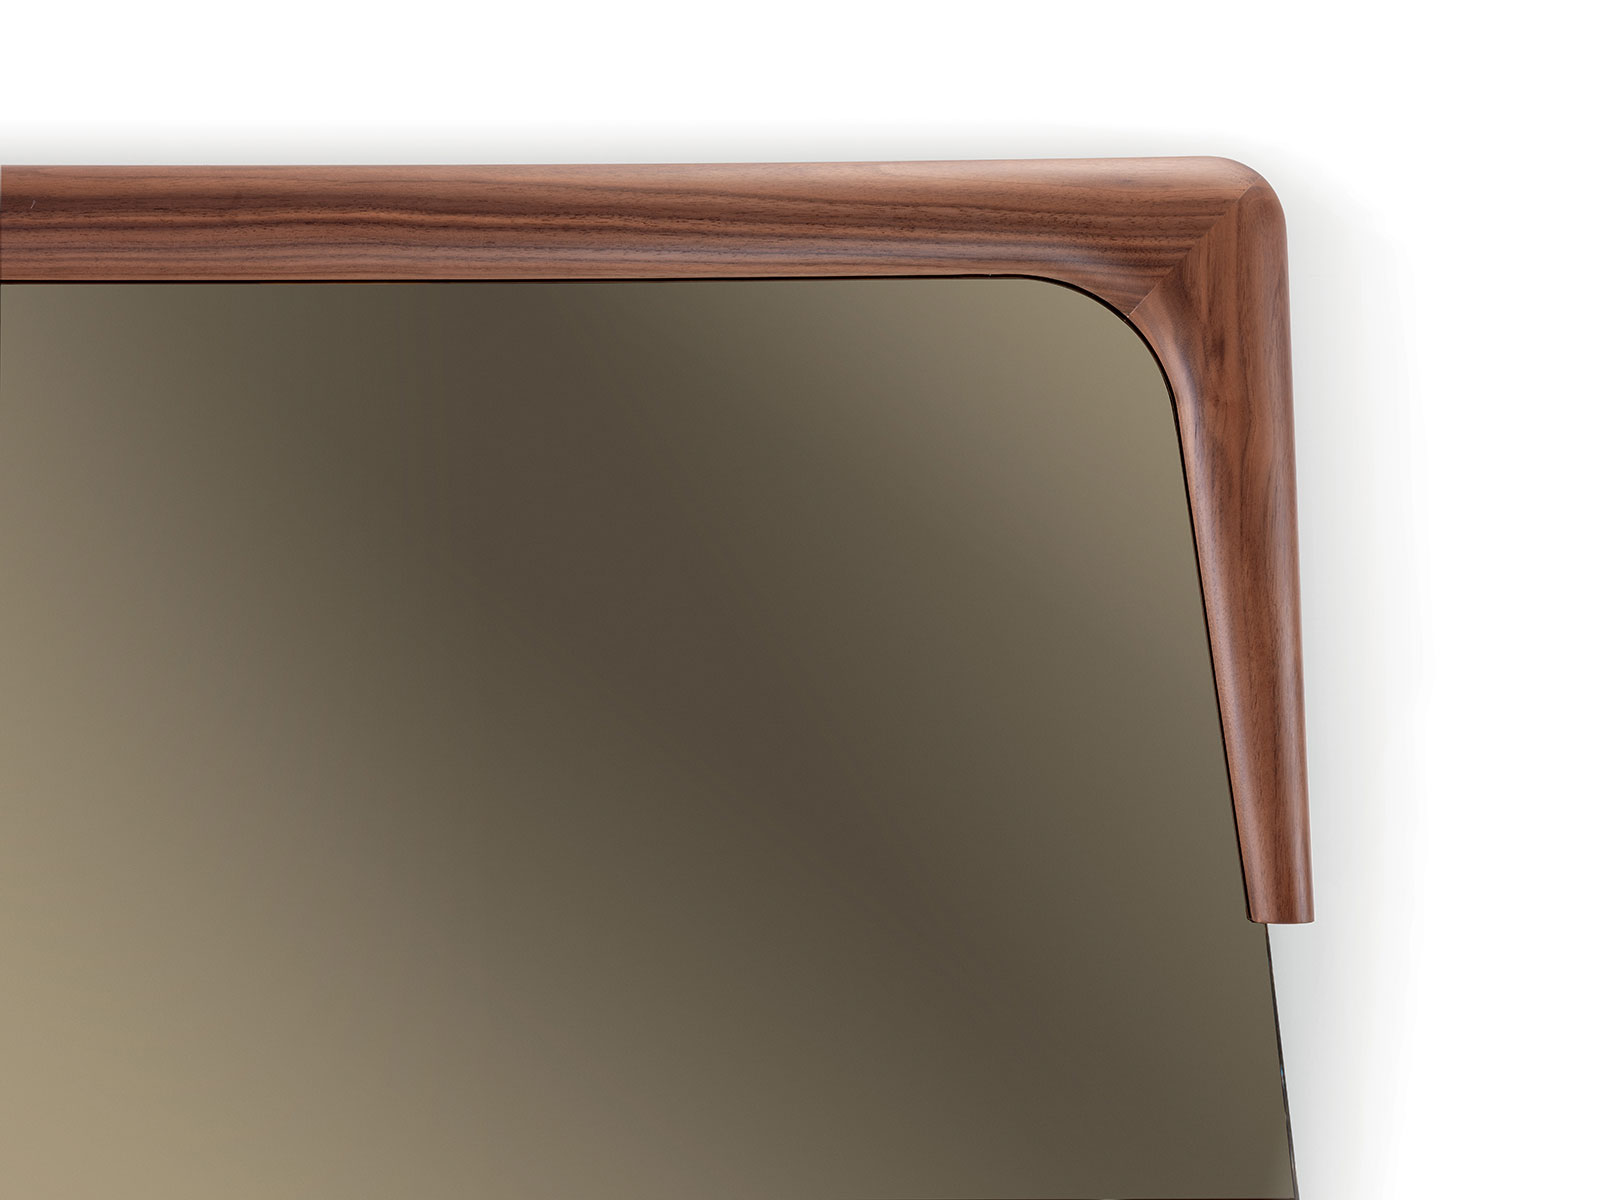 Specchio da parete o da appoggio con cornice in legno massello di noce Canaletto. Vendita online di complementi design made in Italy con consegna gratuita.